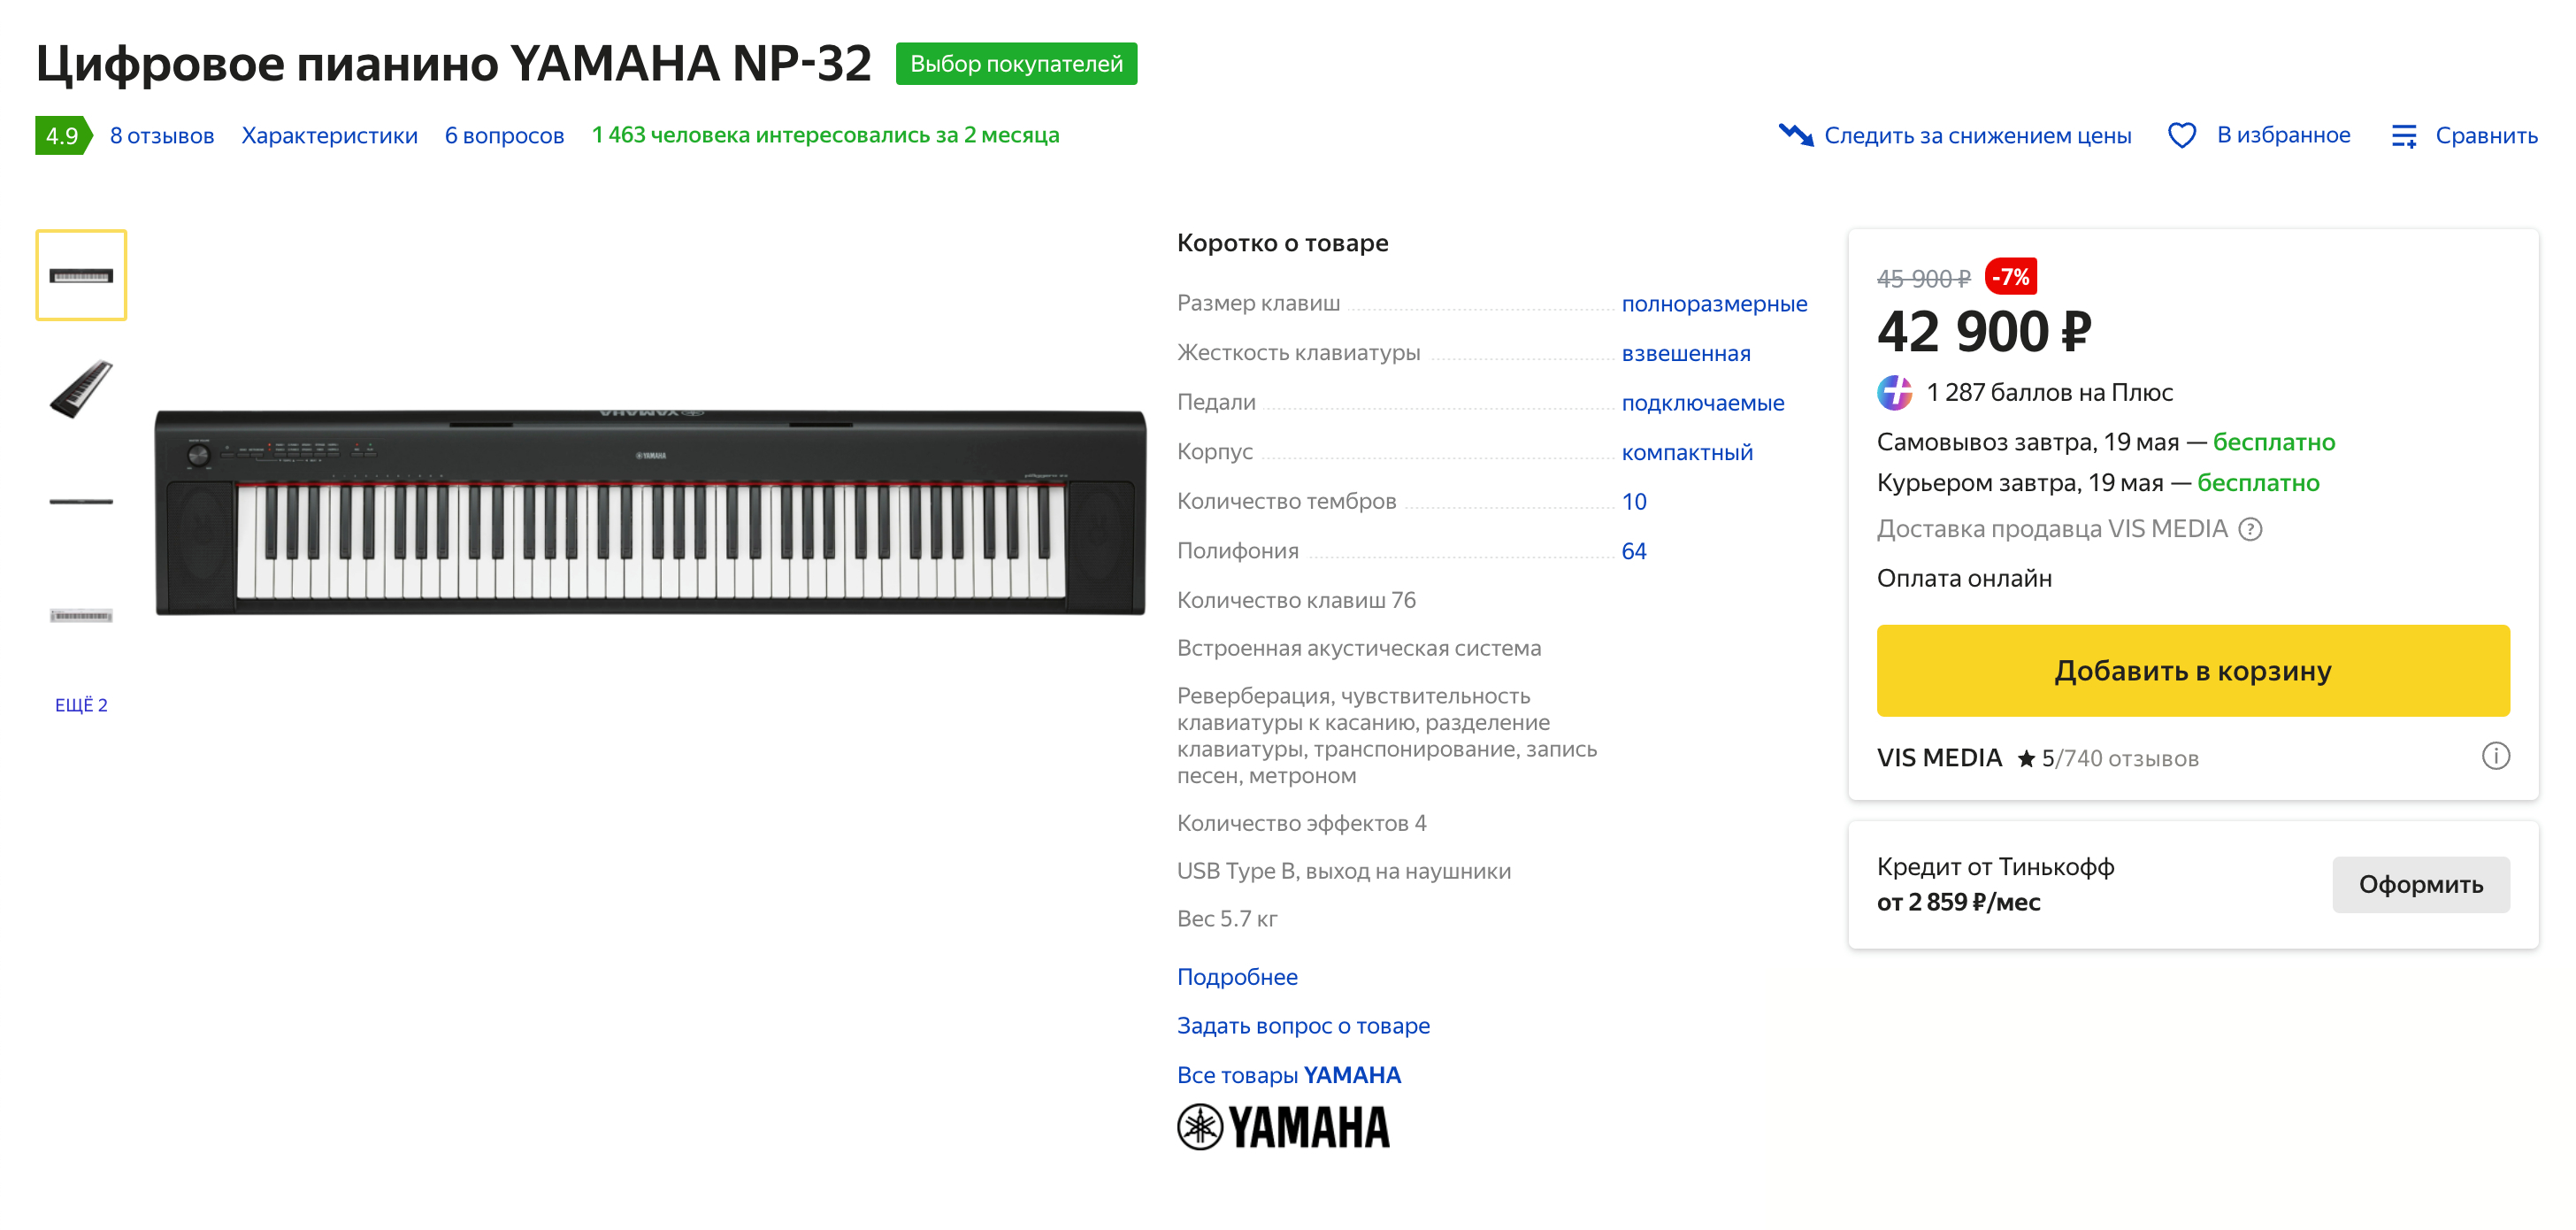 Это пианино Yamaha на 76 клавиш, оно стоит дороже похожей модели на 88 клавиш. Источник: market.yandex.ru